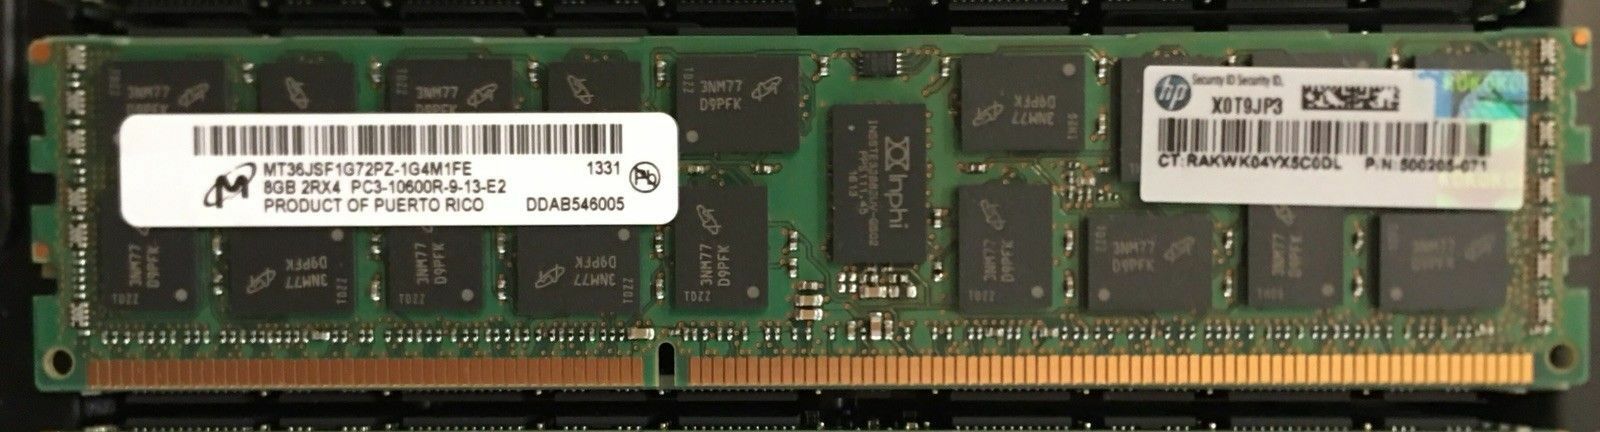 Micron 8GB 2Rx4 PC3-10600R DDR3-1333 MT36JSF1G72PZ-1G4M 500205-071 